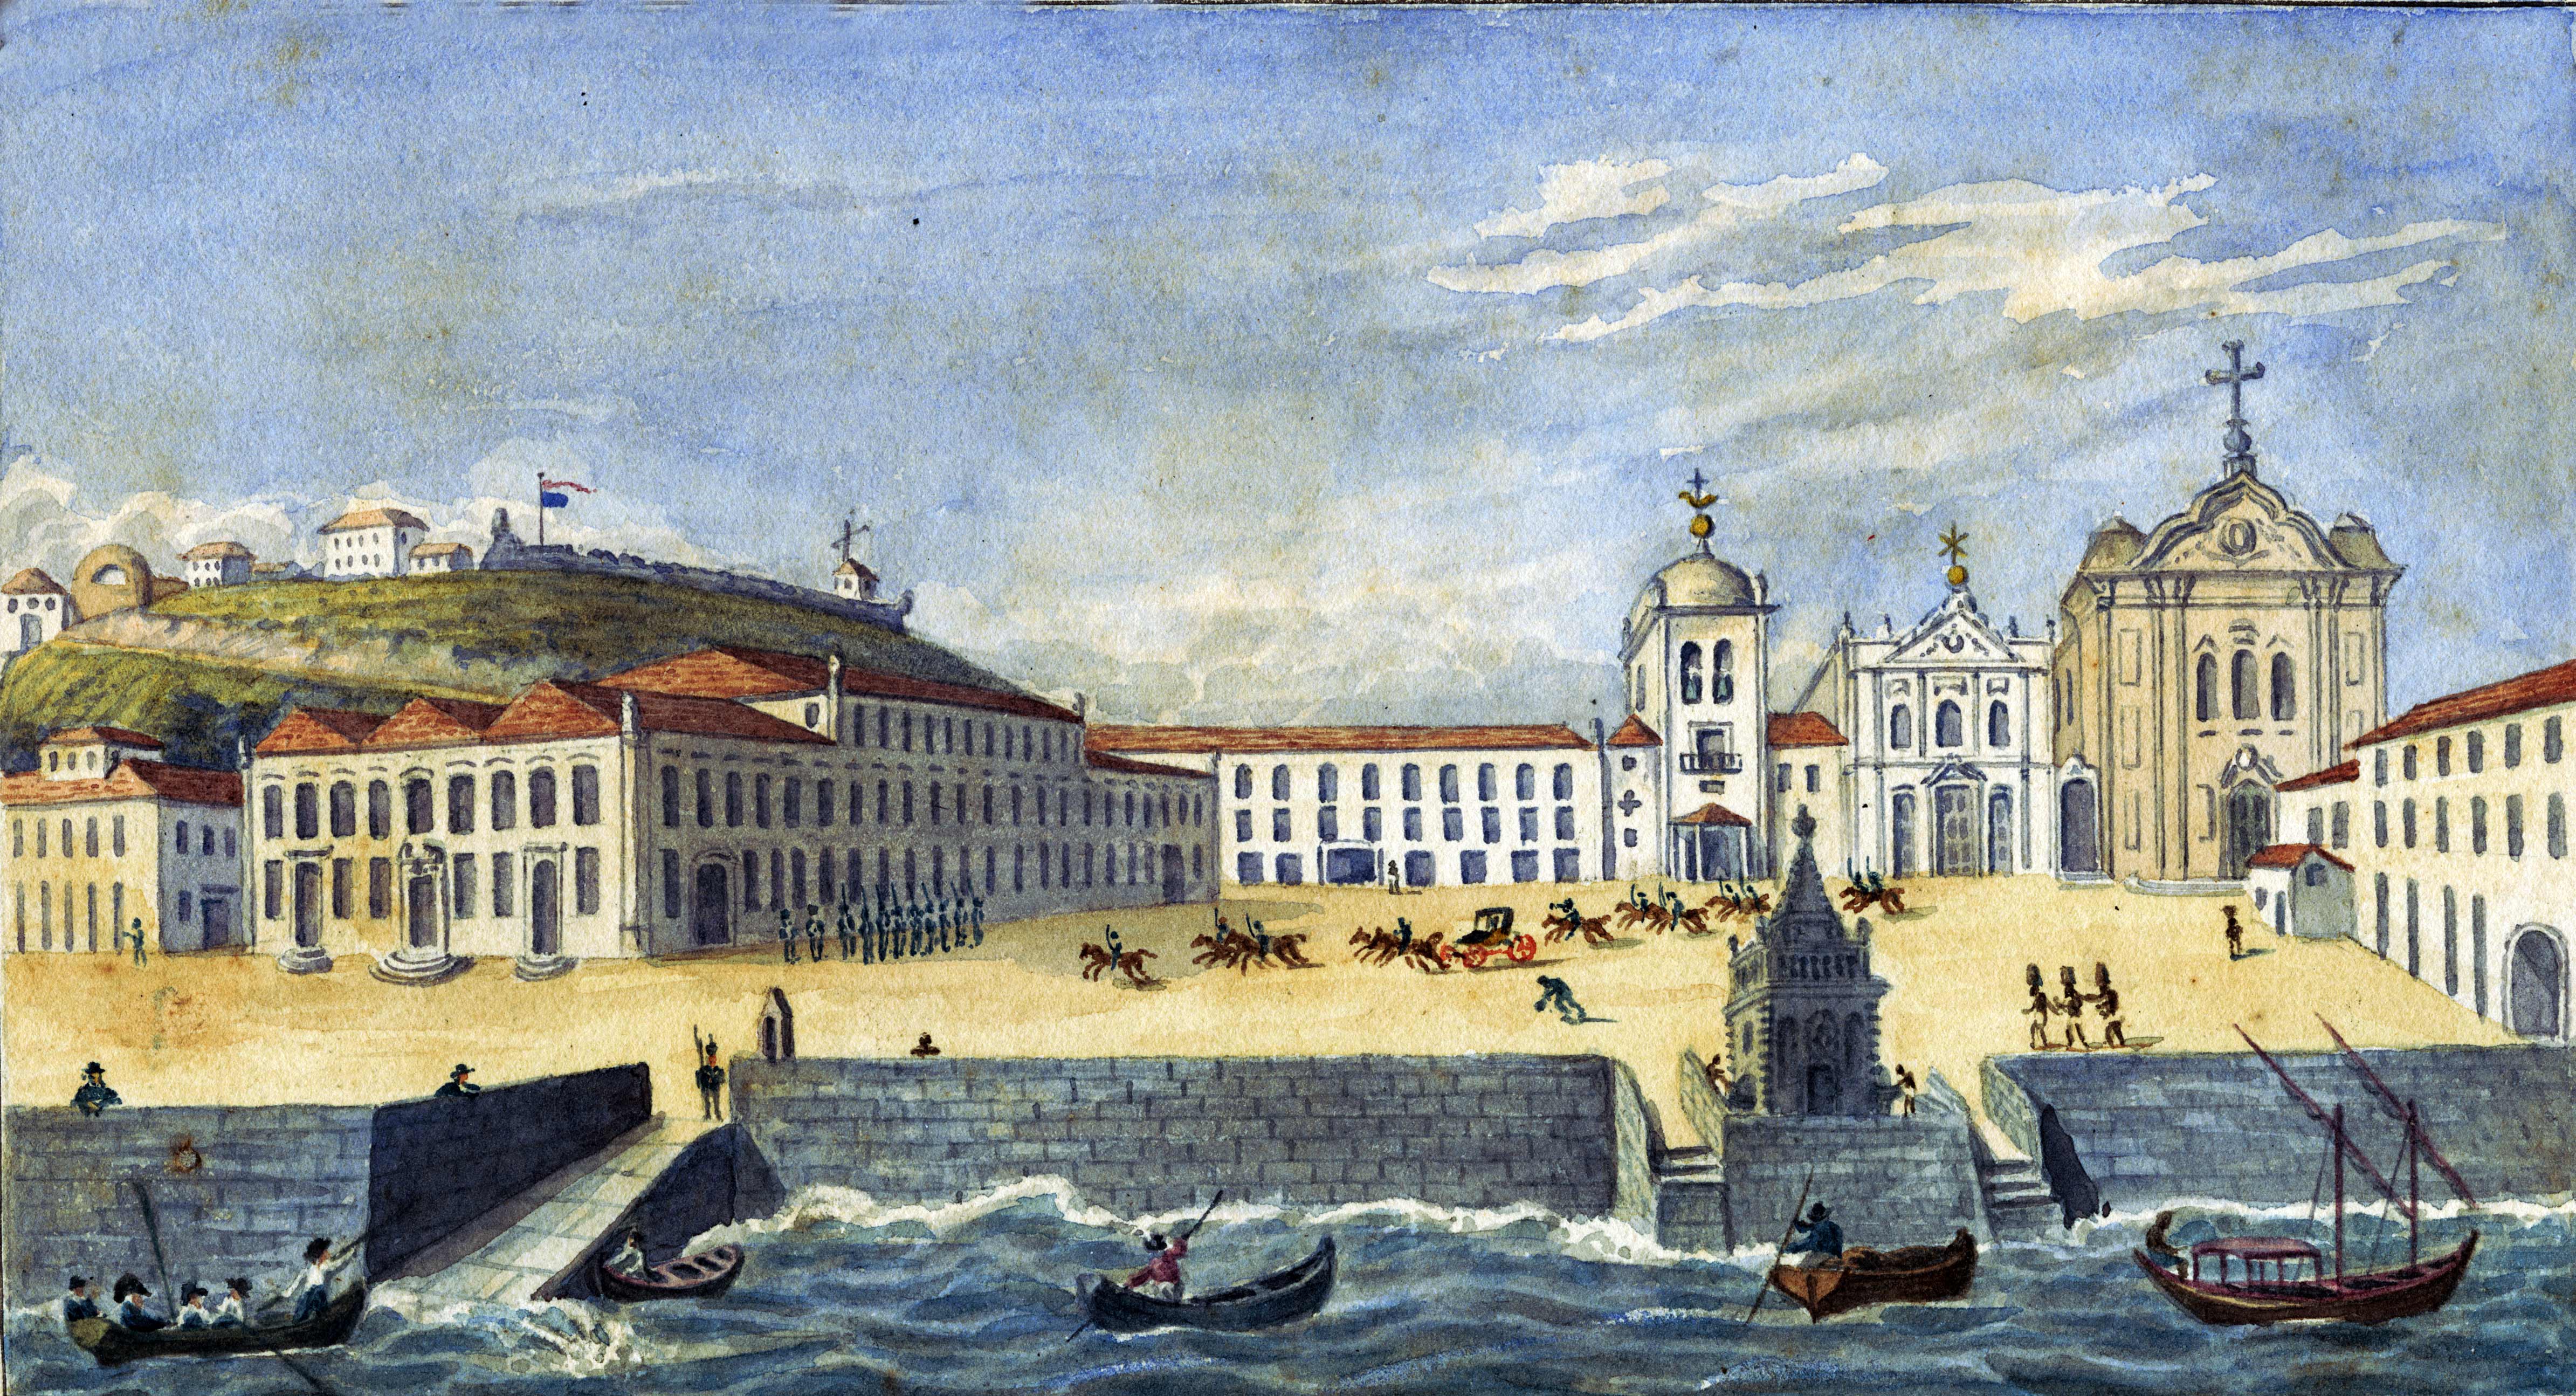 (1) Palace Square, Rio de Janeiro. Richard Bate Acervo da Biblioteca da Universidade de Cornell, NY